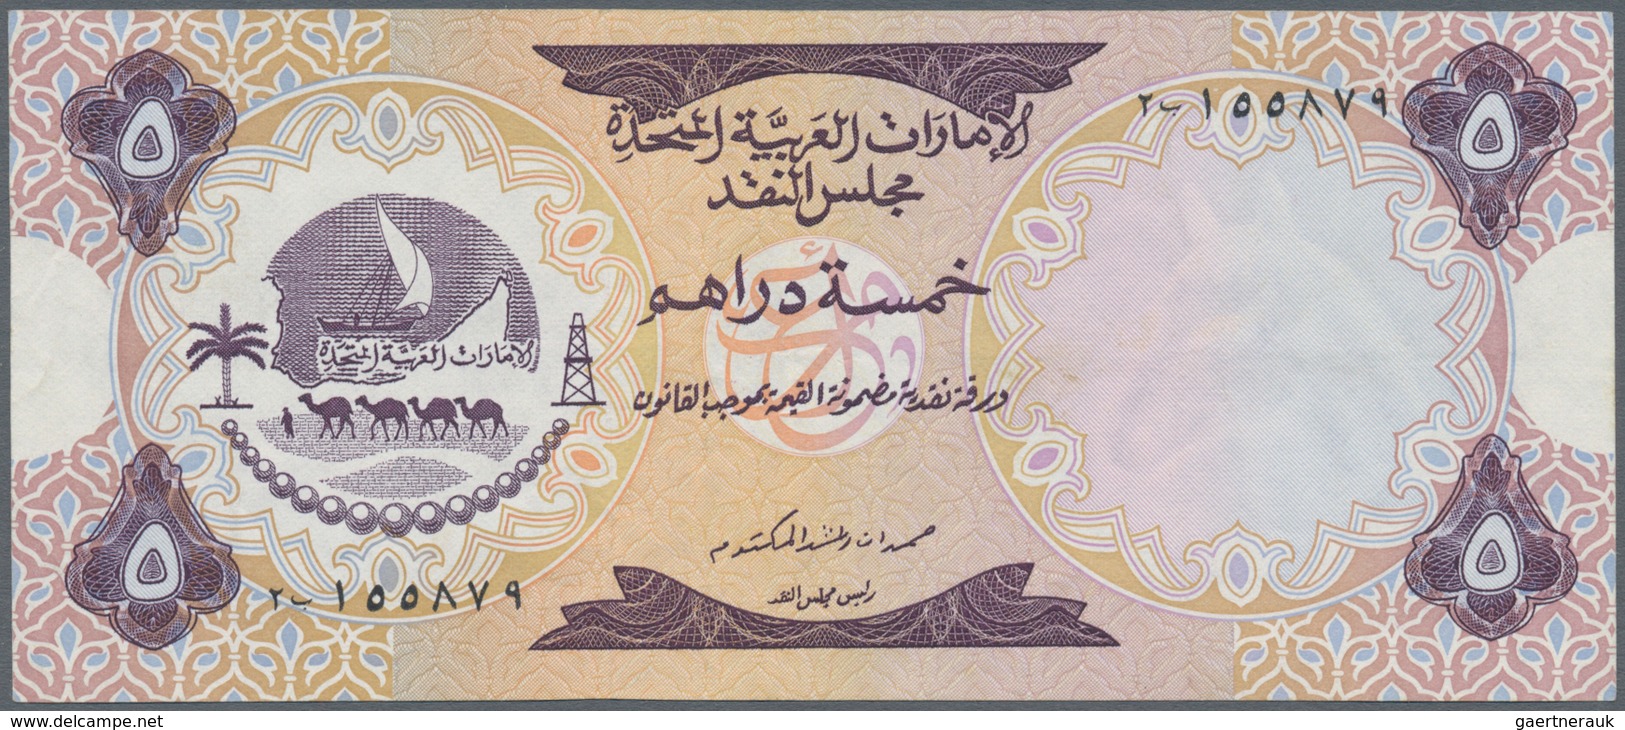 02572 United Arab Emirates / Vereinigte Arabische Emirate: Set Of 2 Banknotes 5 And 10 Dirhams ND(1973) P. - Verenigde Arabische Emiraten